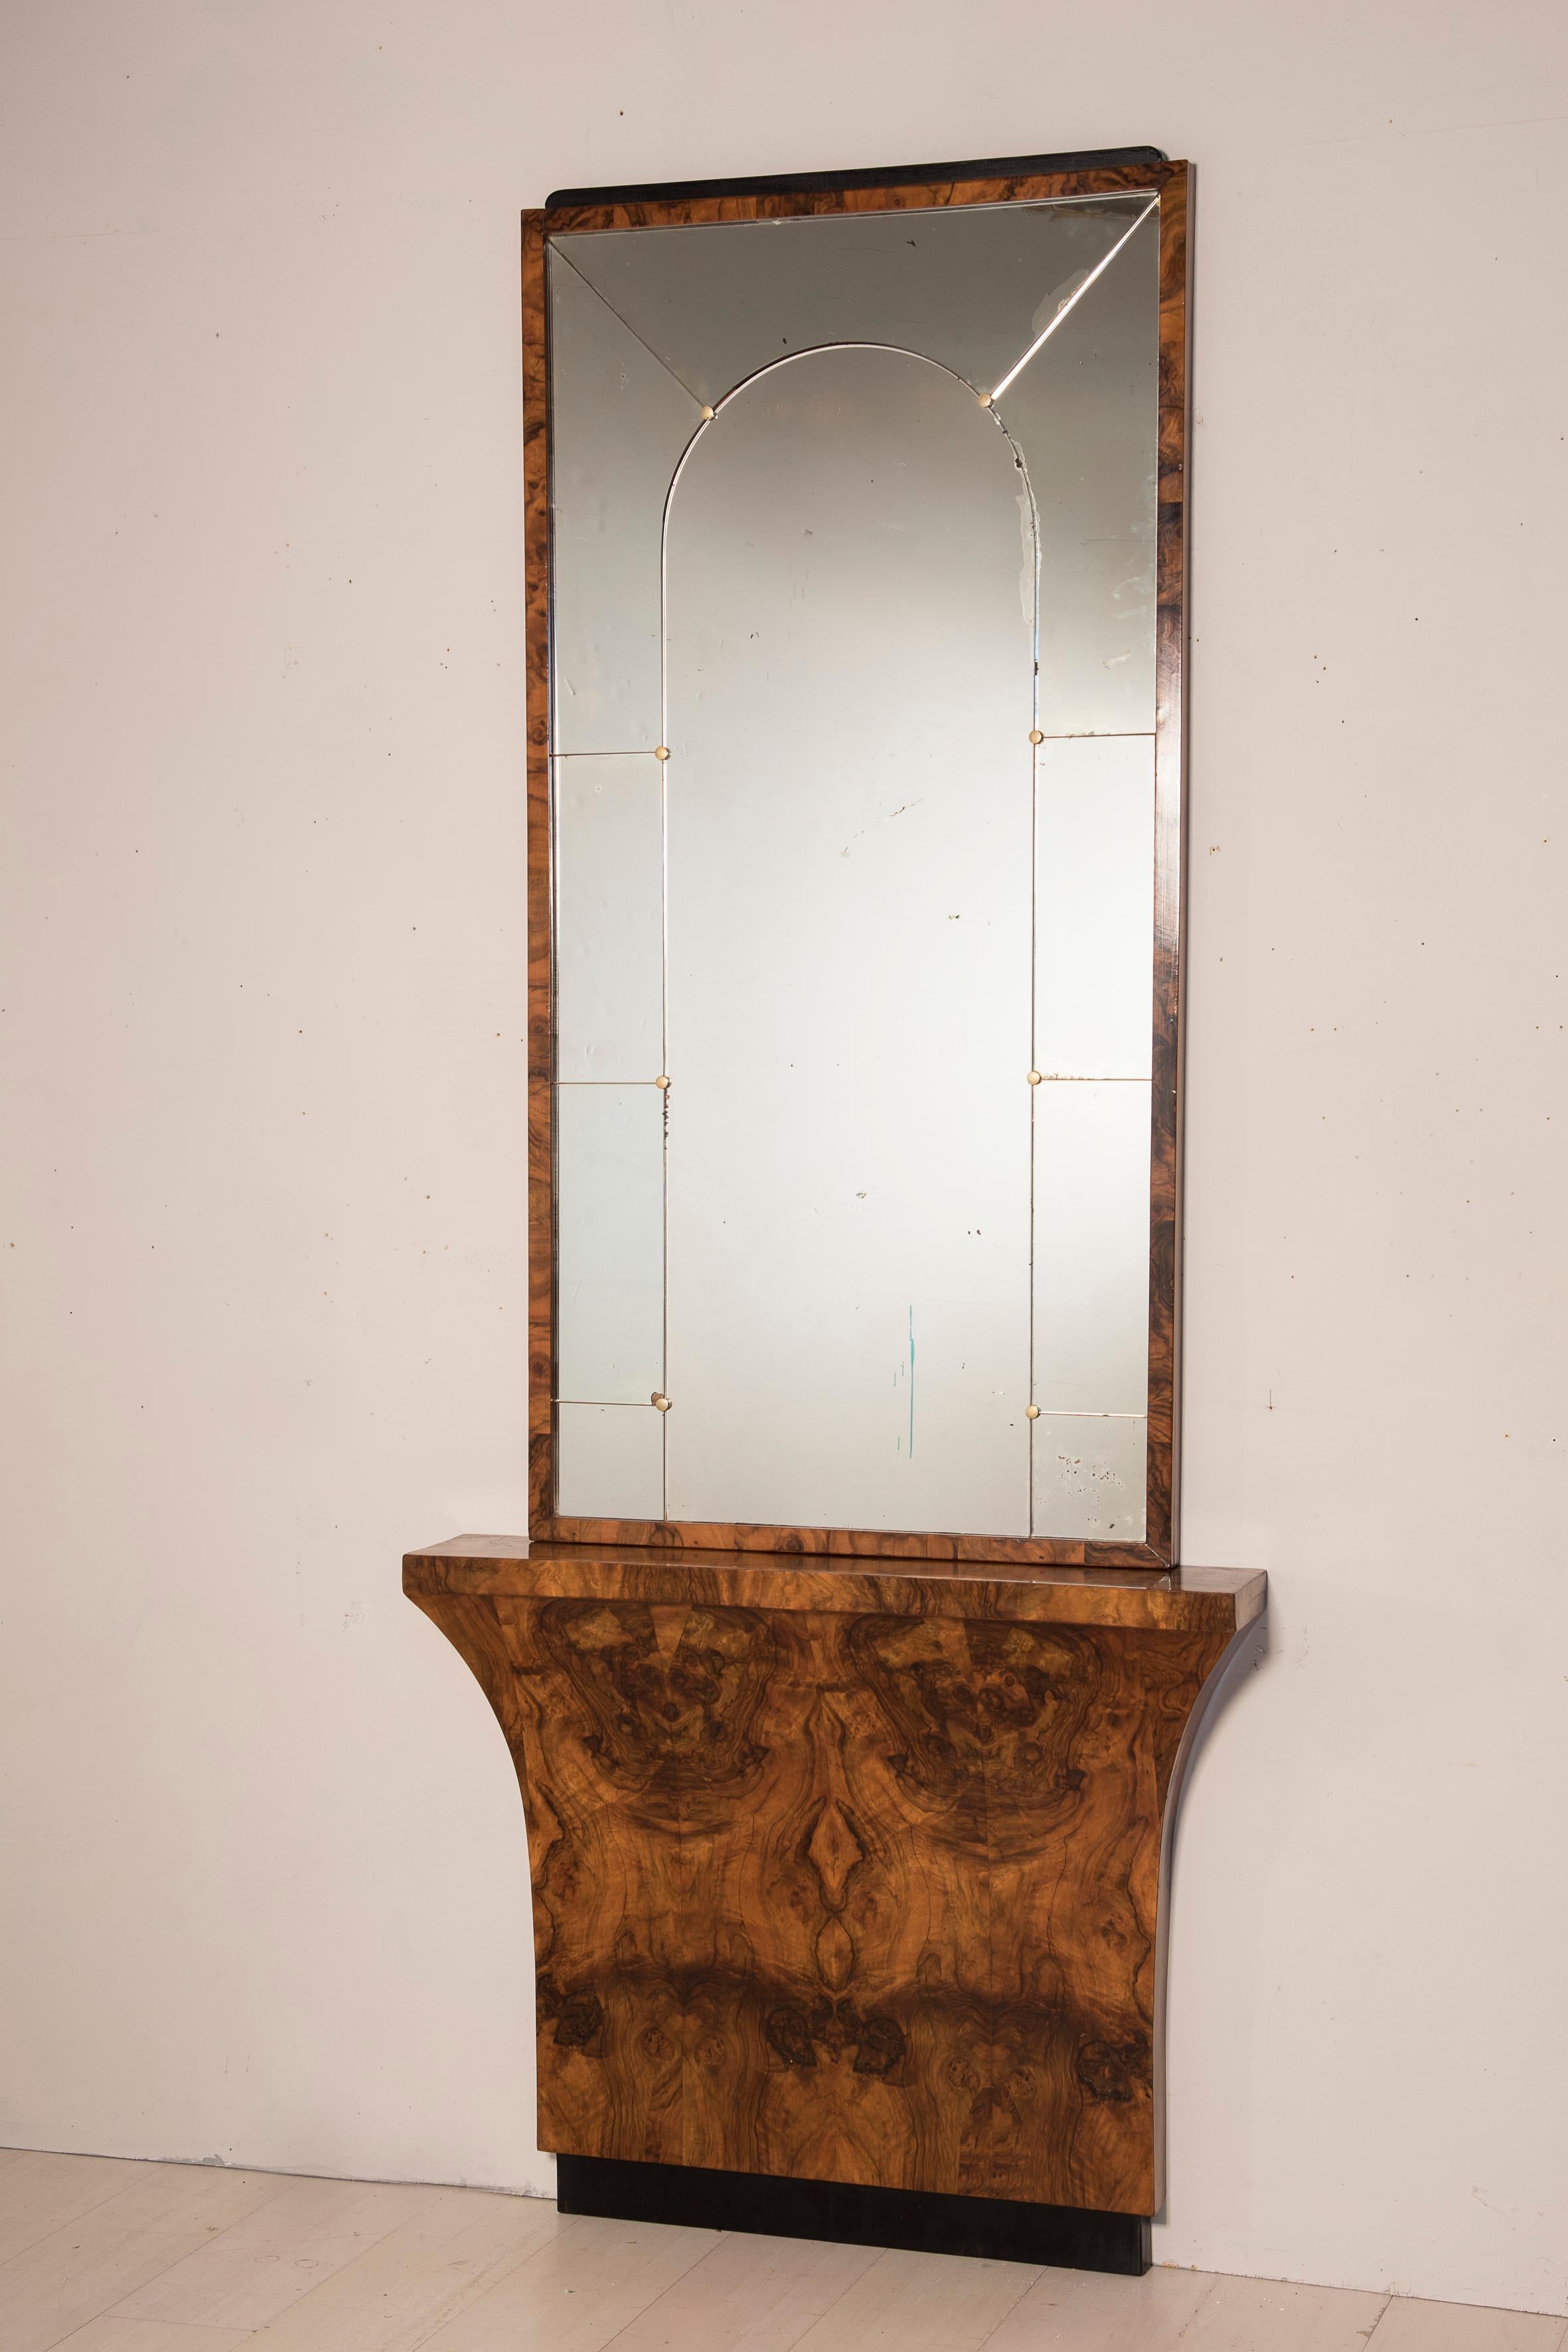 Console Art Déco en placage des années 1930 avec miroir. Le piètement de la table console présente une grande flamme en placage. Le miroir est recouvert d'un panneau avec des clous en laiton.
Dimensions de la base 100 x 18 h 82 cm - dimensions du